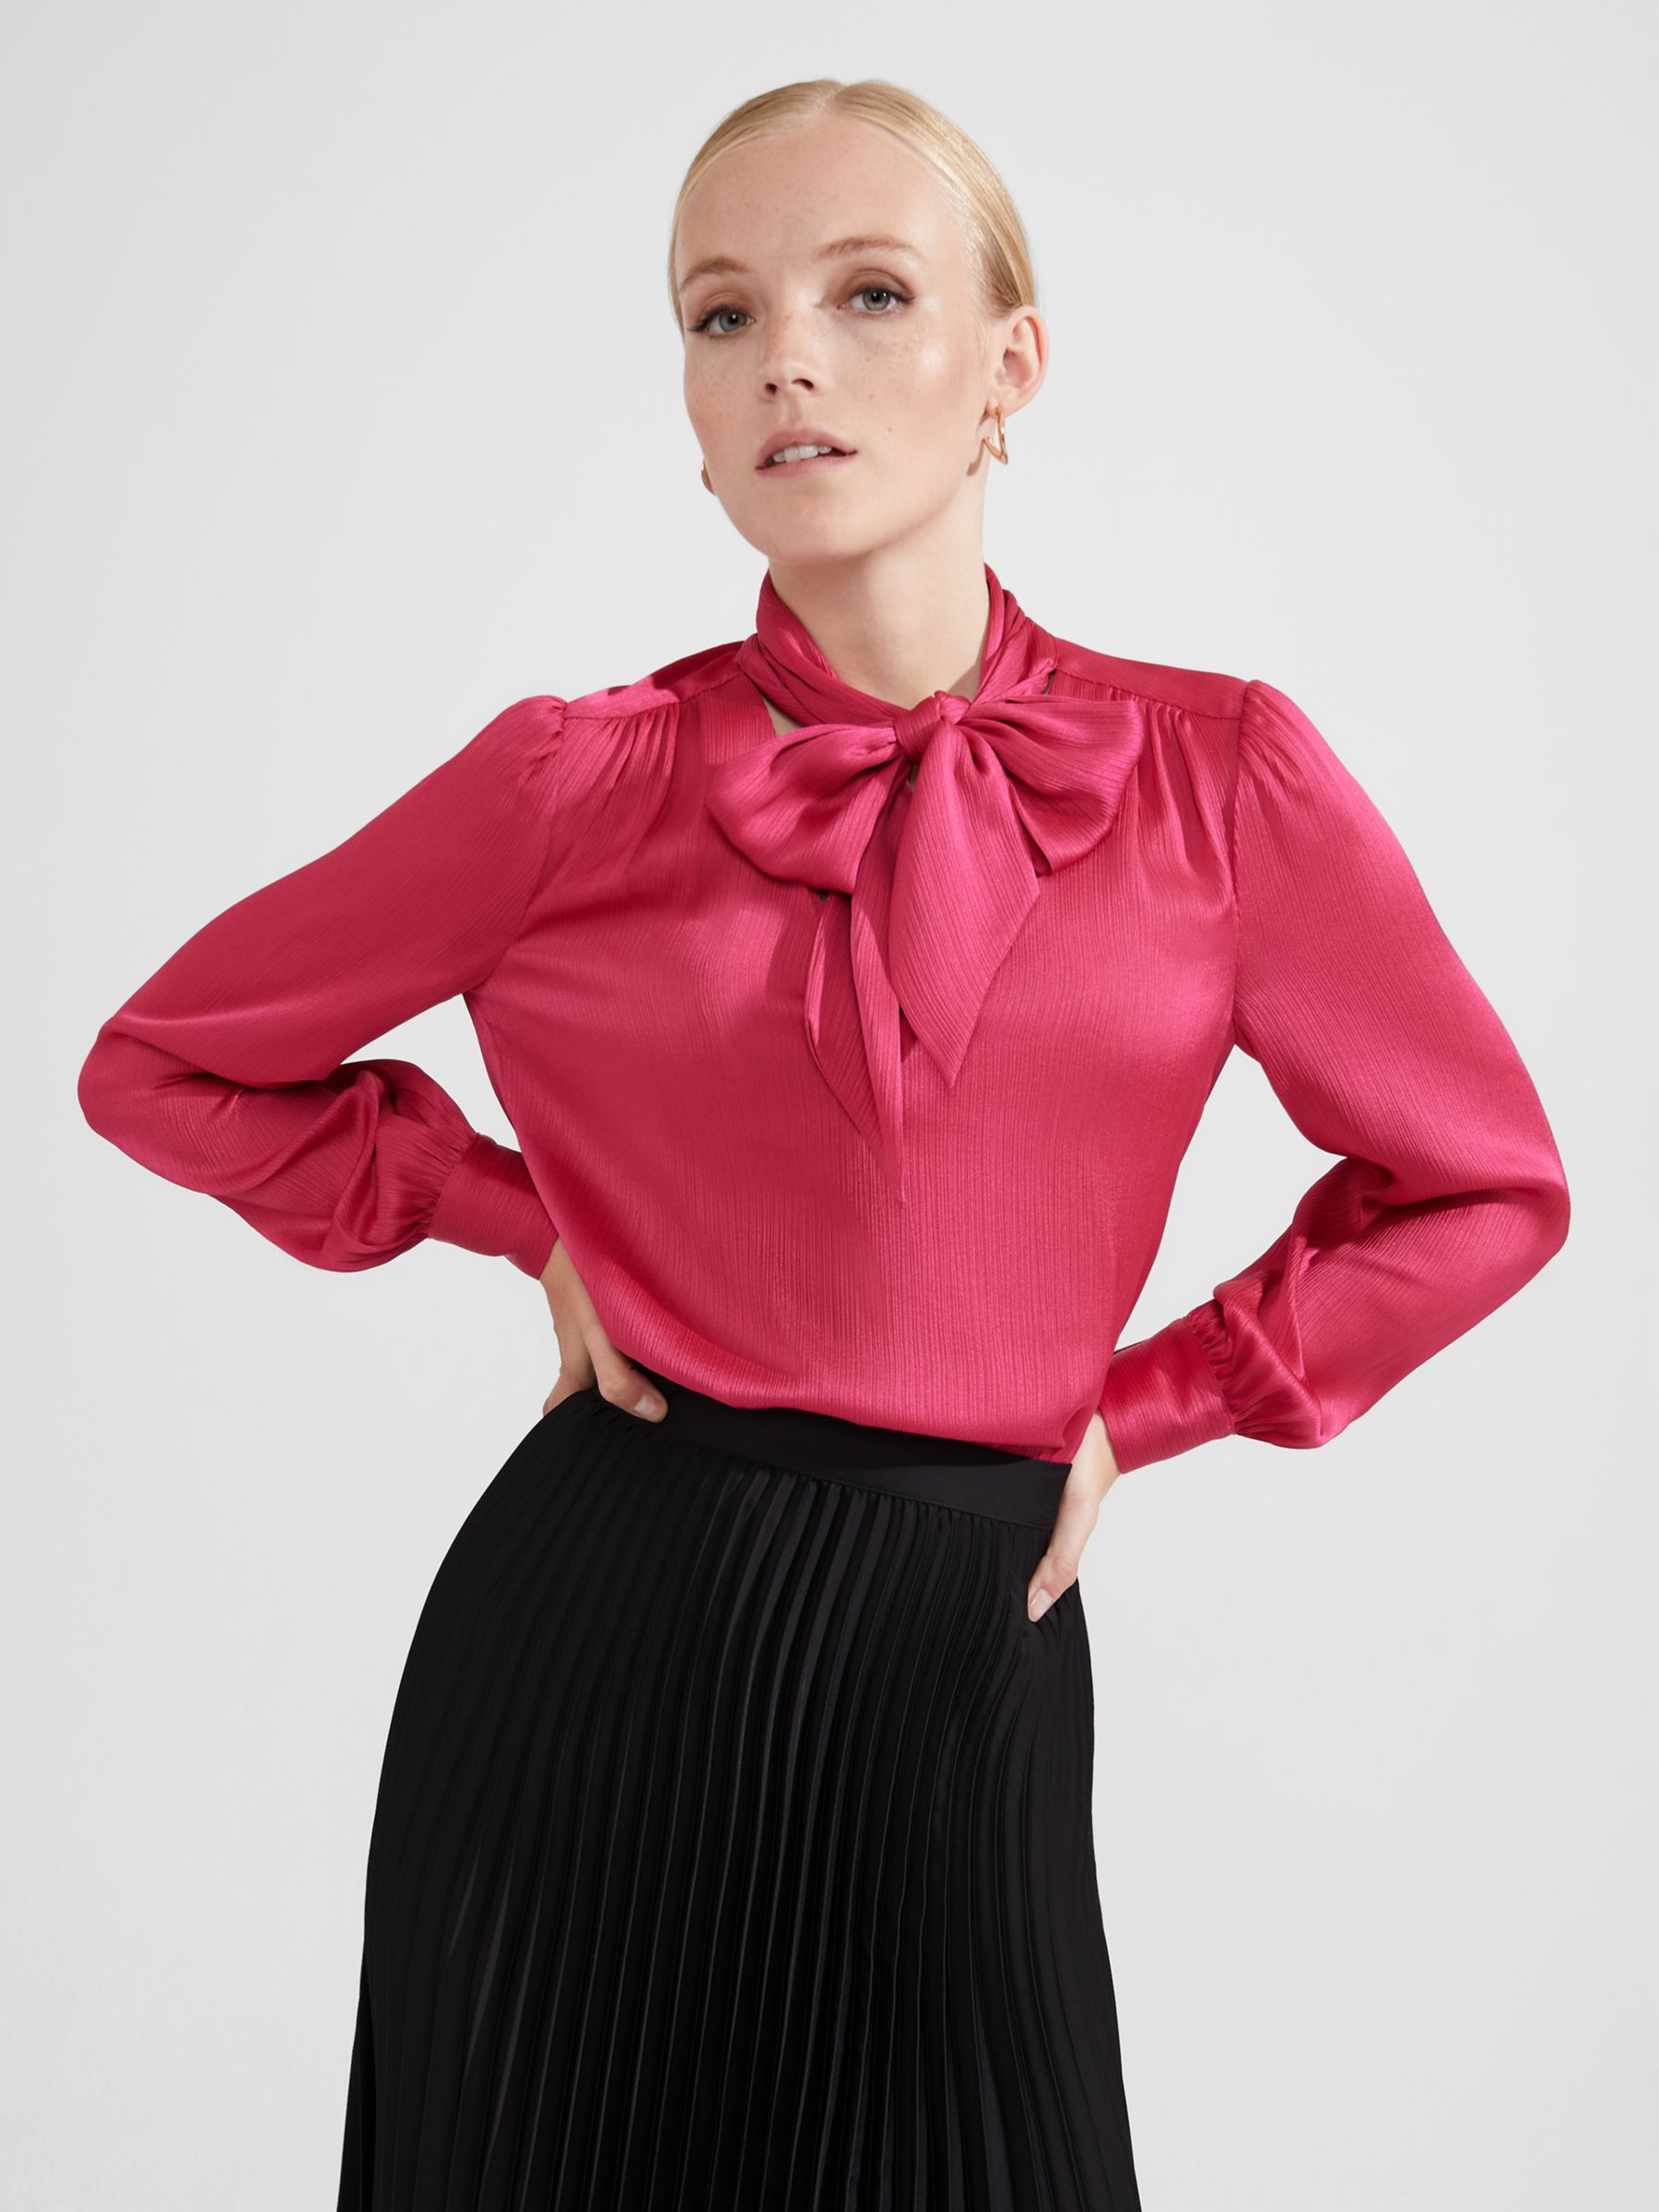 Women's Shirts & Tops - Tie Neck, Pink